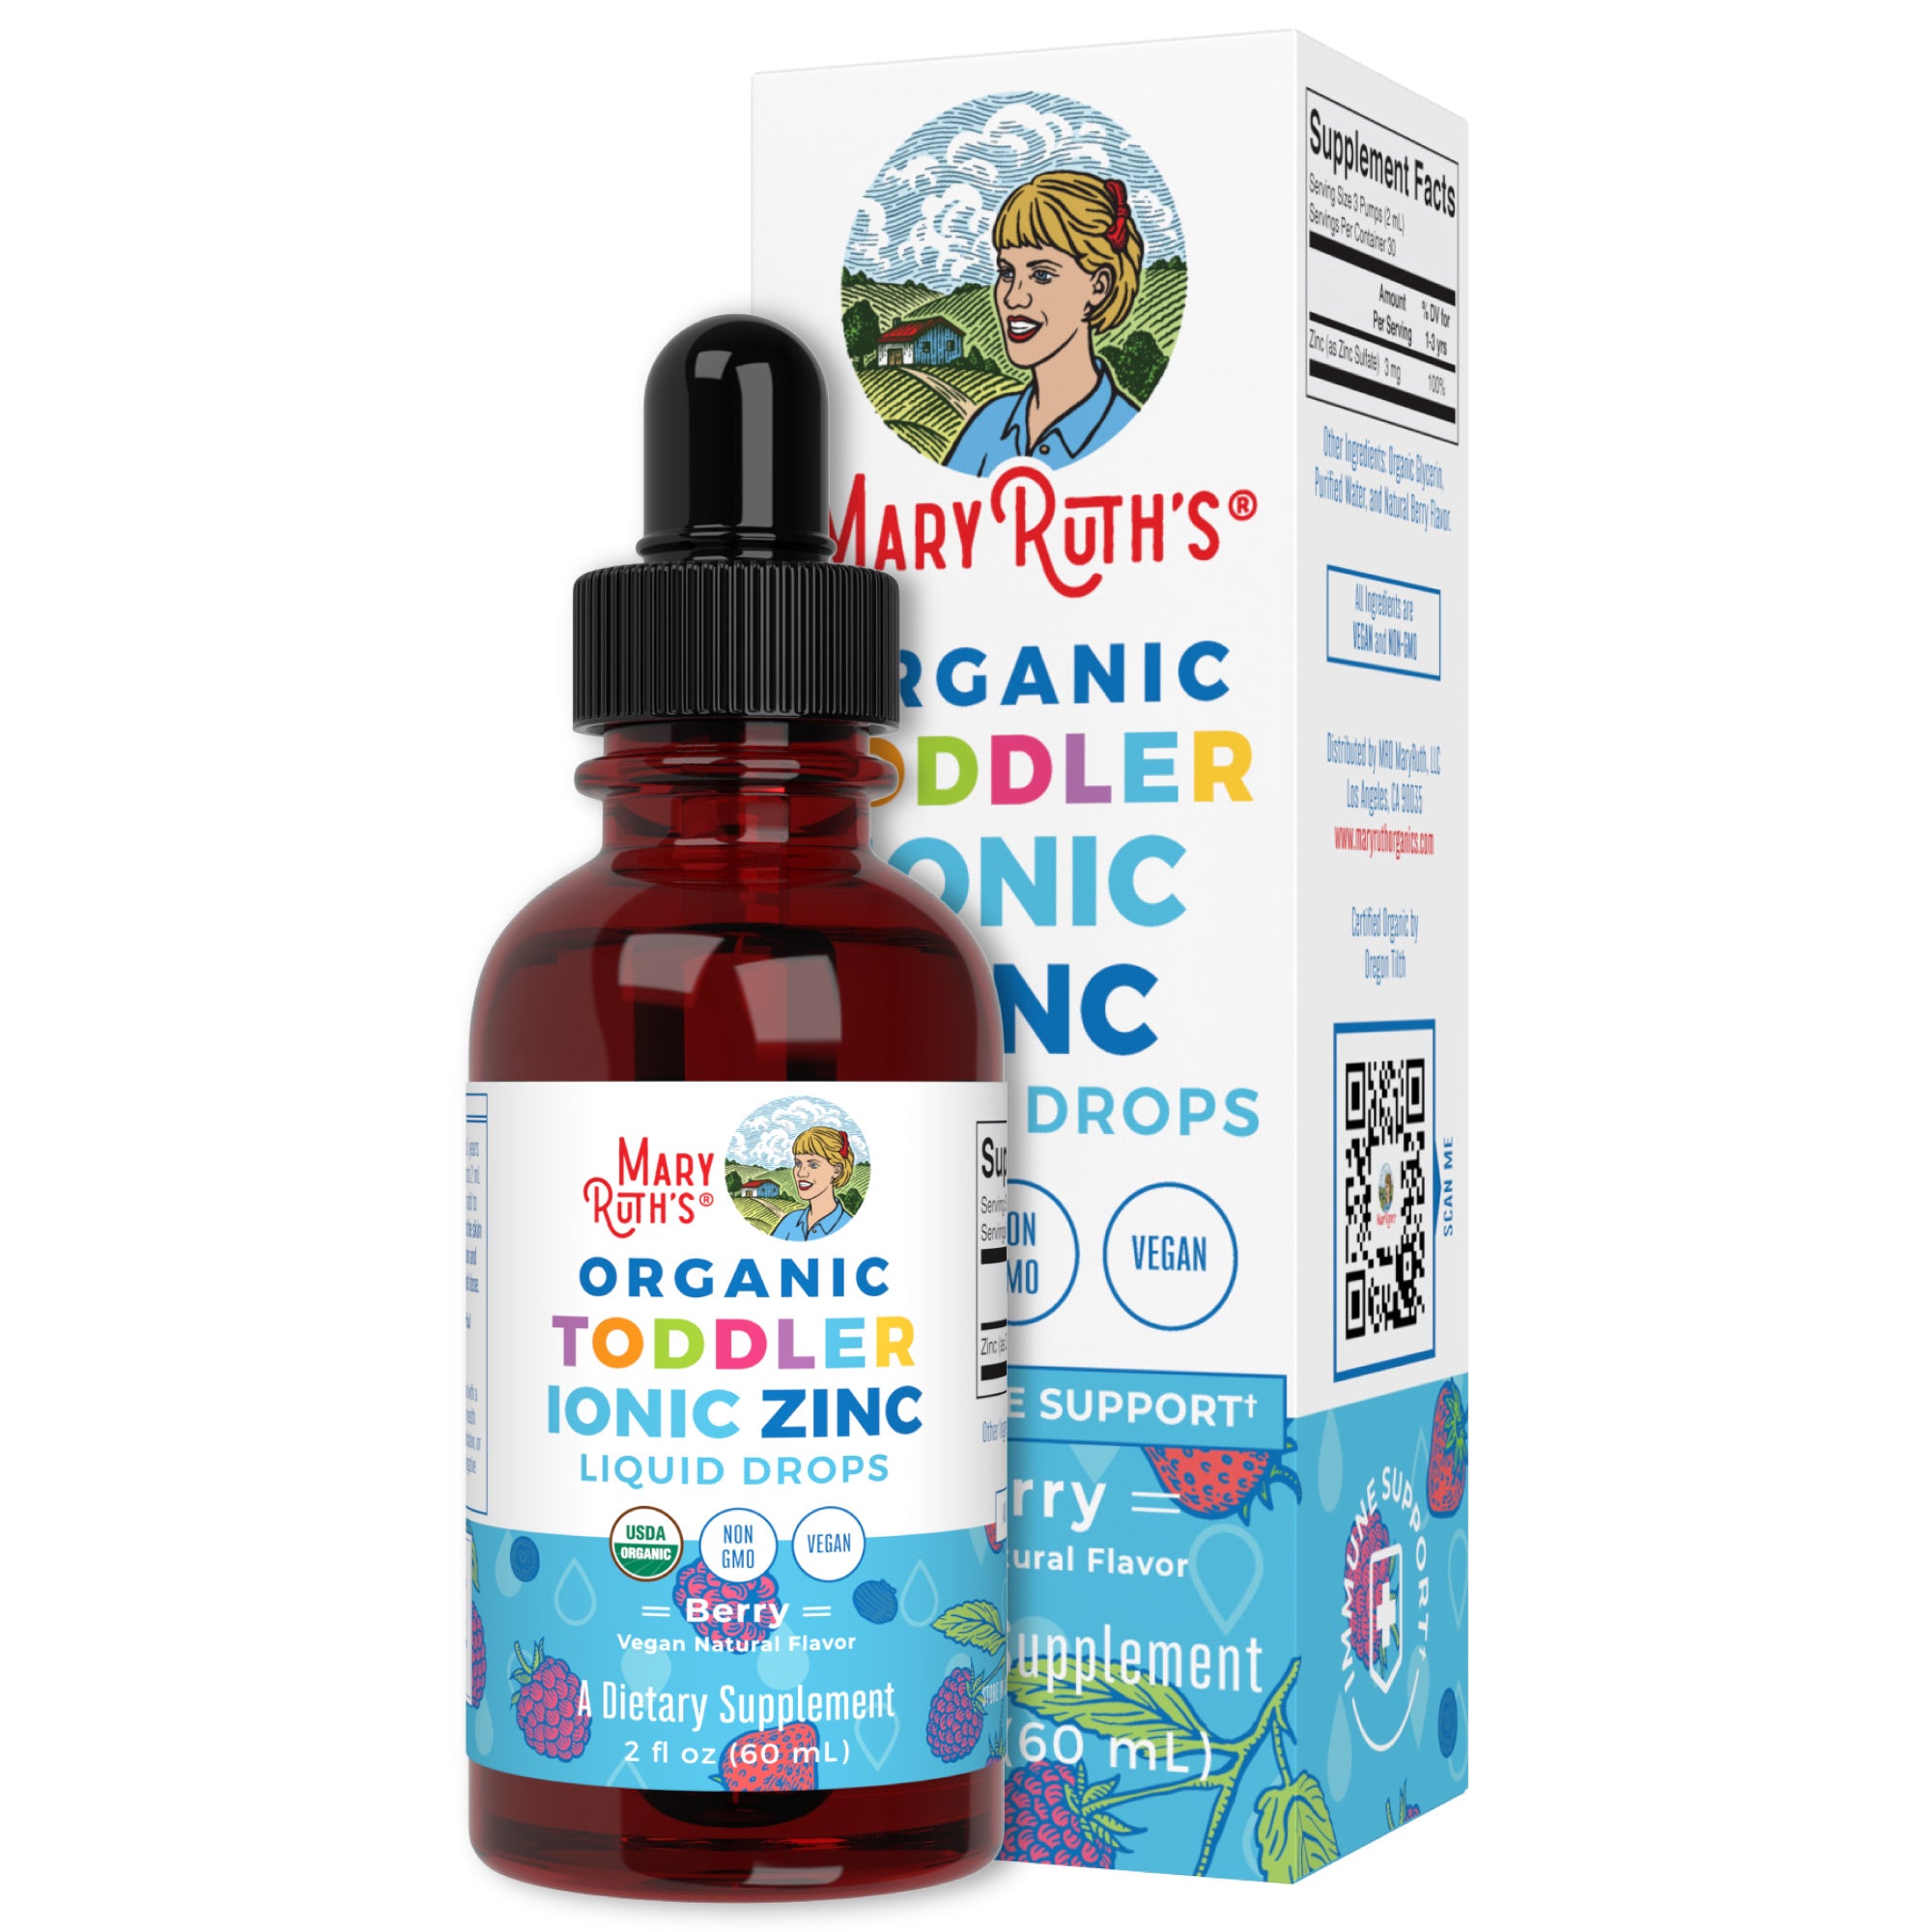 Organic Toddler Ionic Zinc Liquid Drops